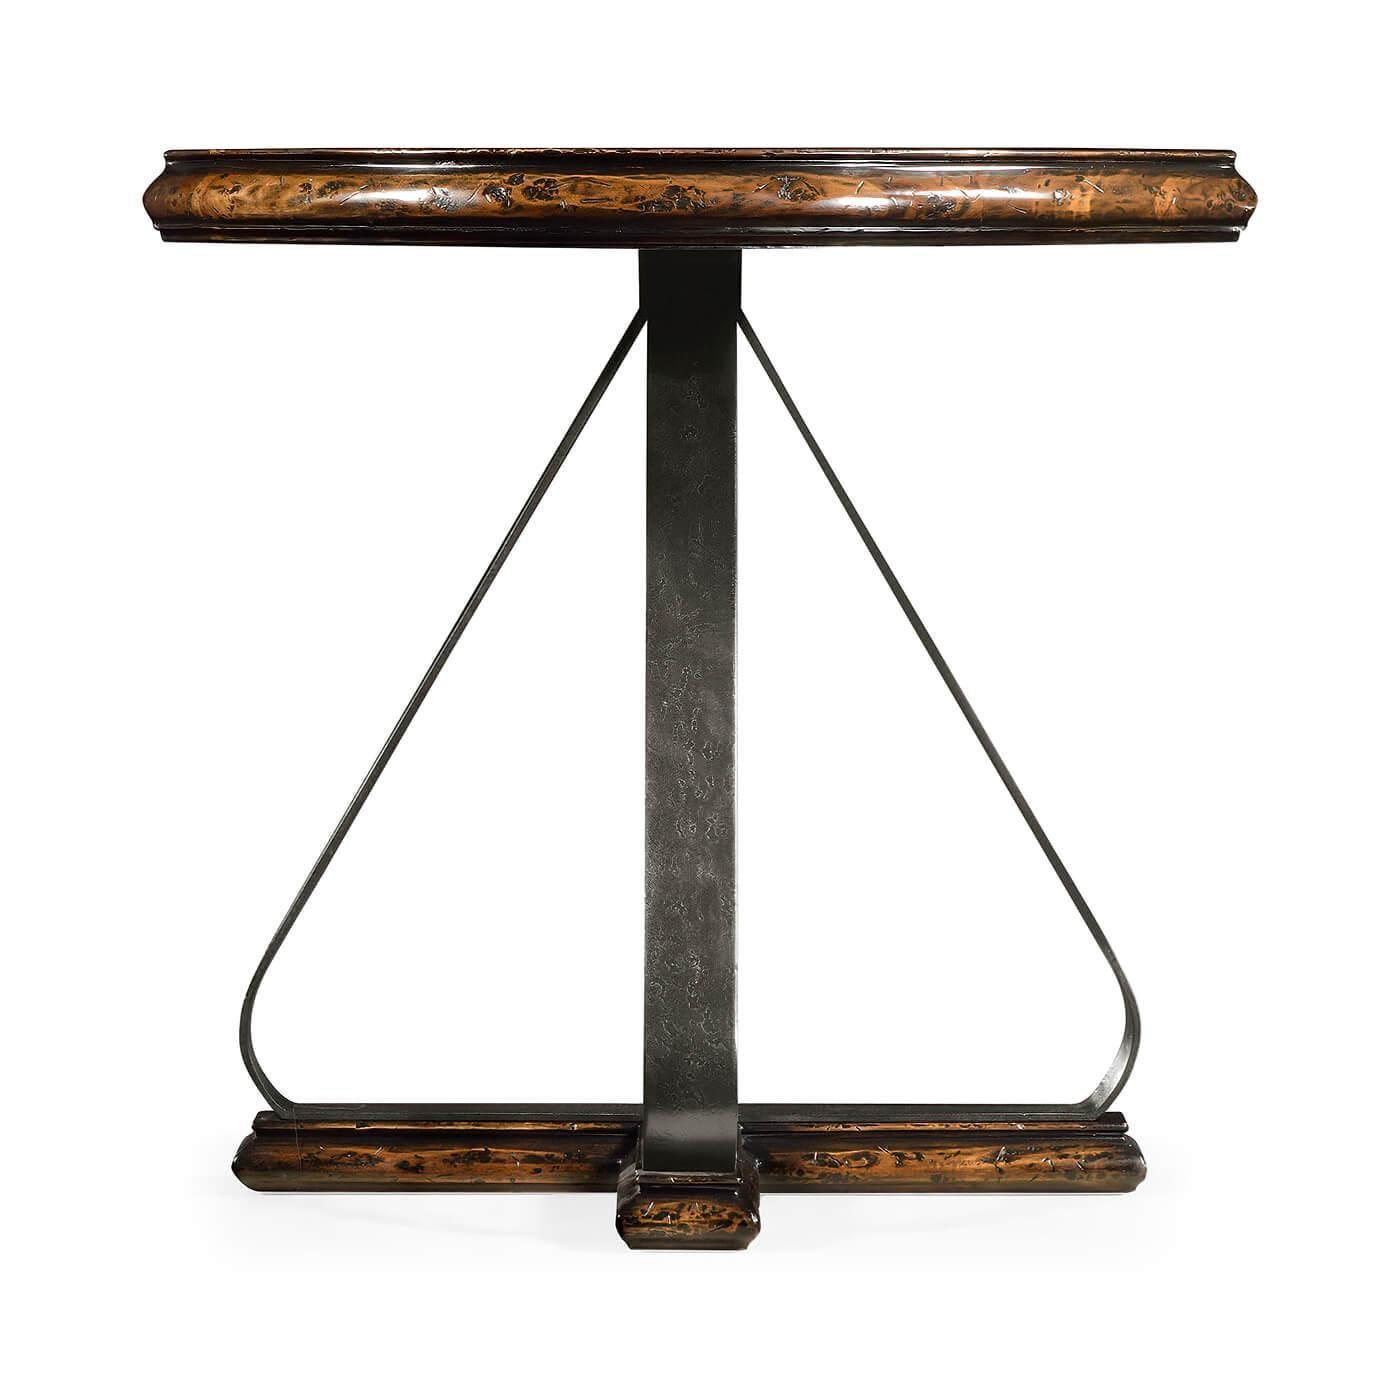 Table d'appoint ronde rustique avec un plateau en bois de noyer rustique vieilli avec un bord extérieur mouluré, reposant sur une base à 4 pieds en fer incurvée.

Dimensions : 32